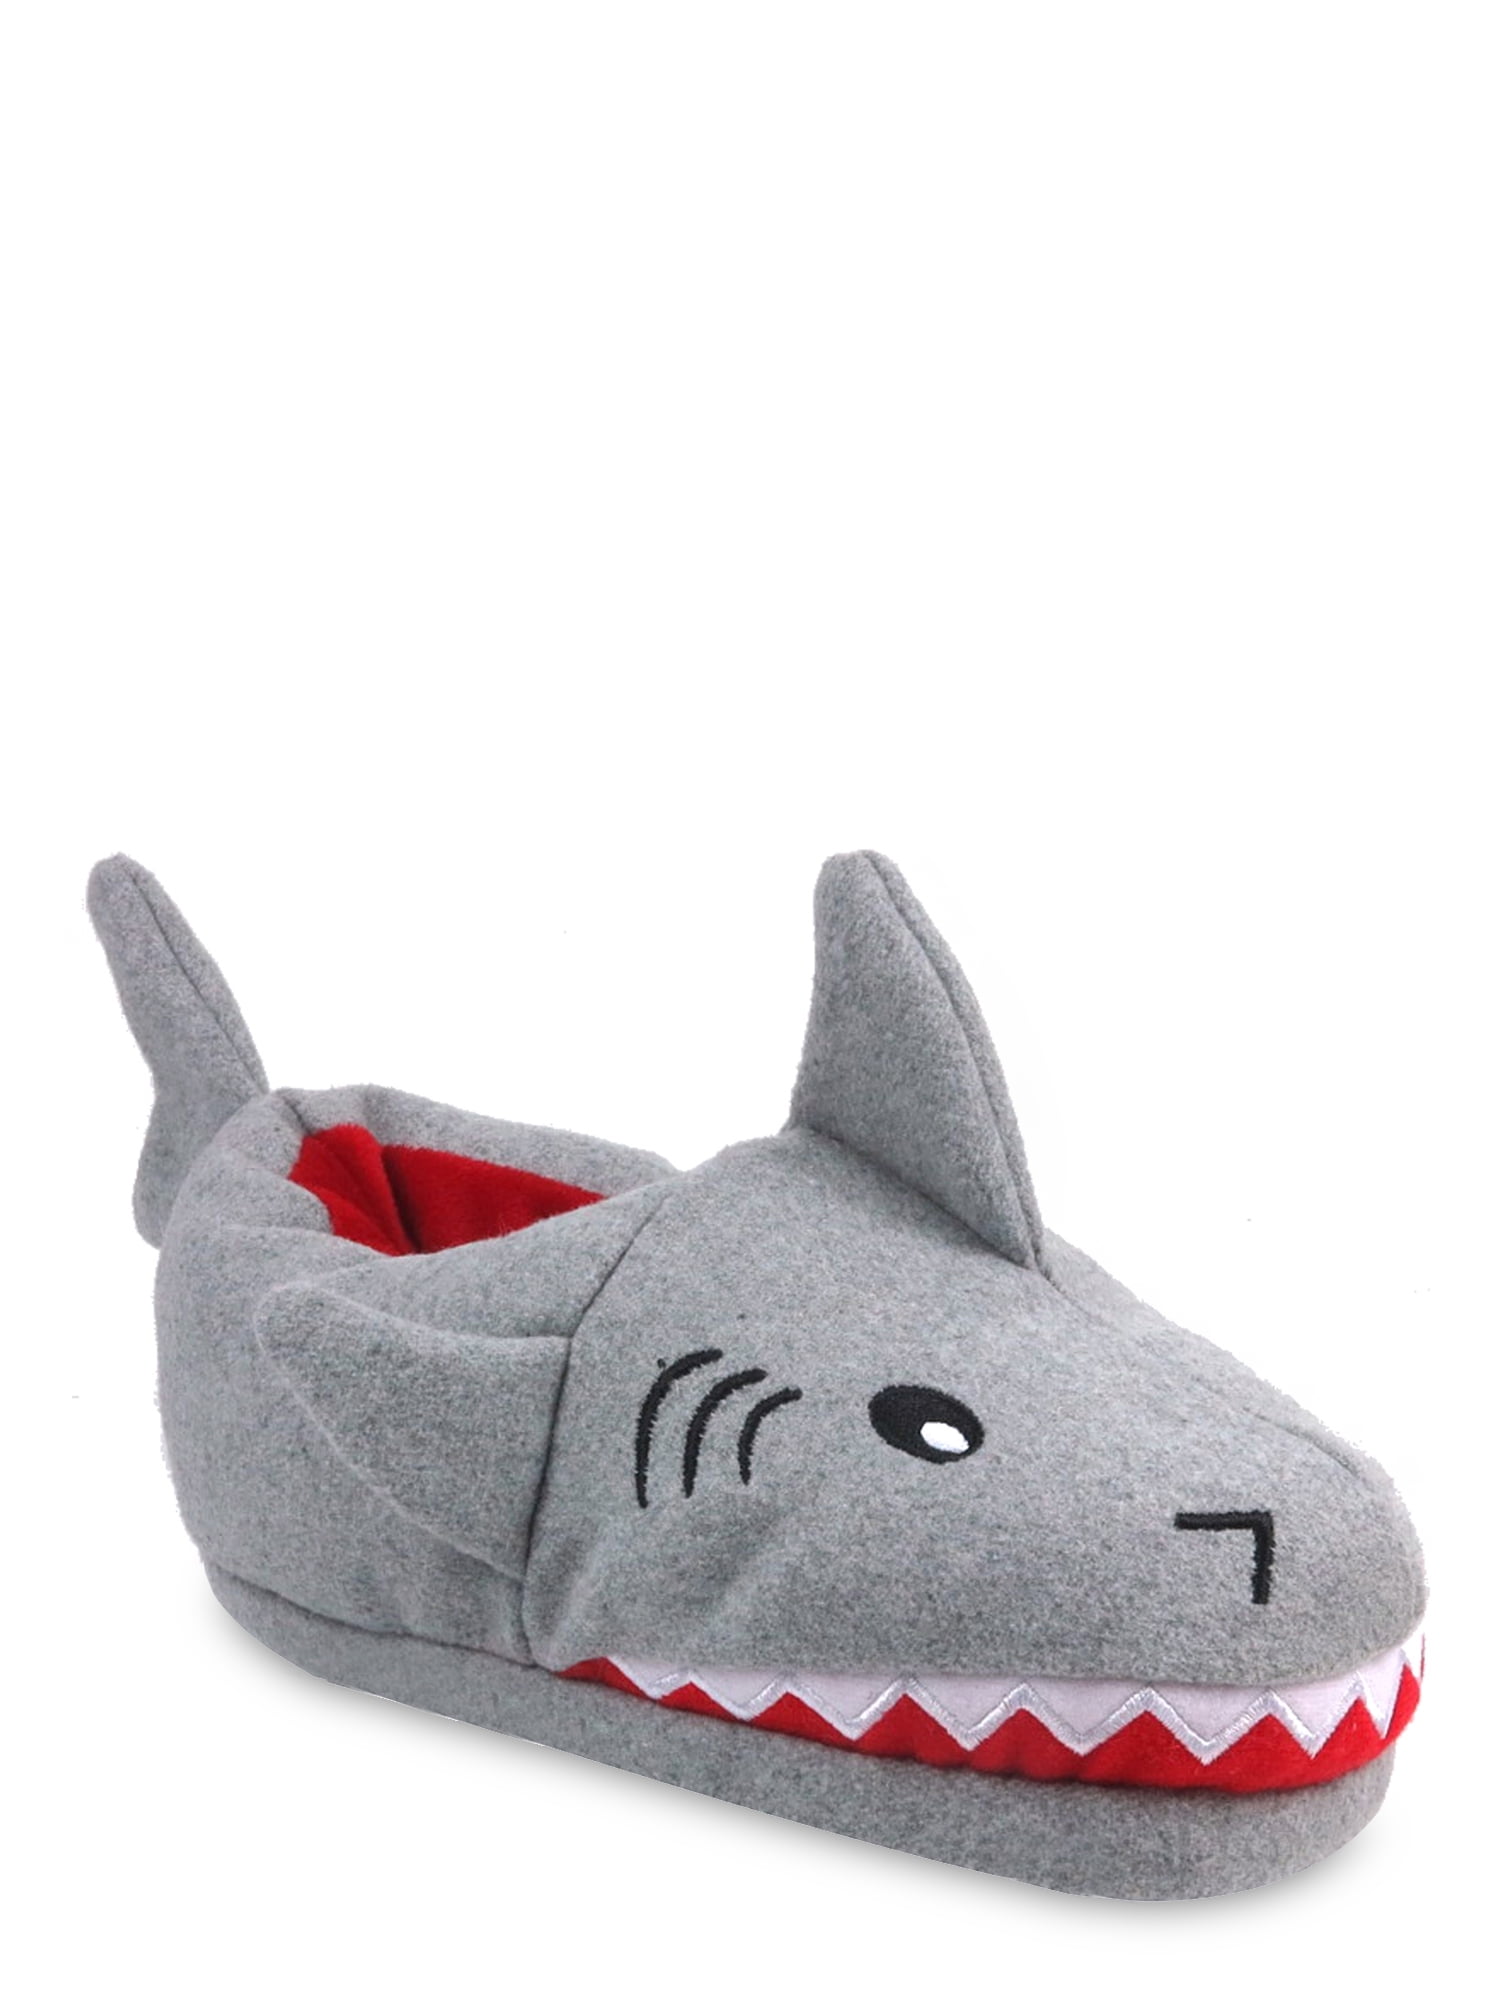 j crew shark slippers